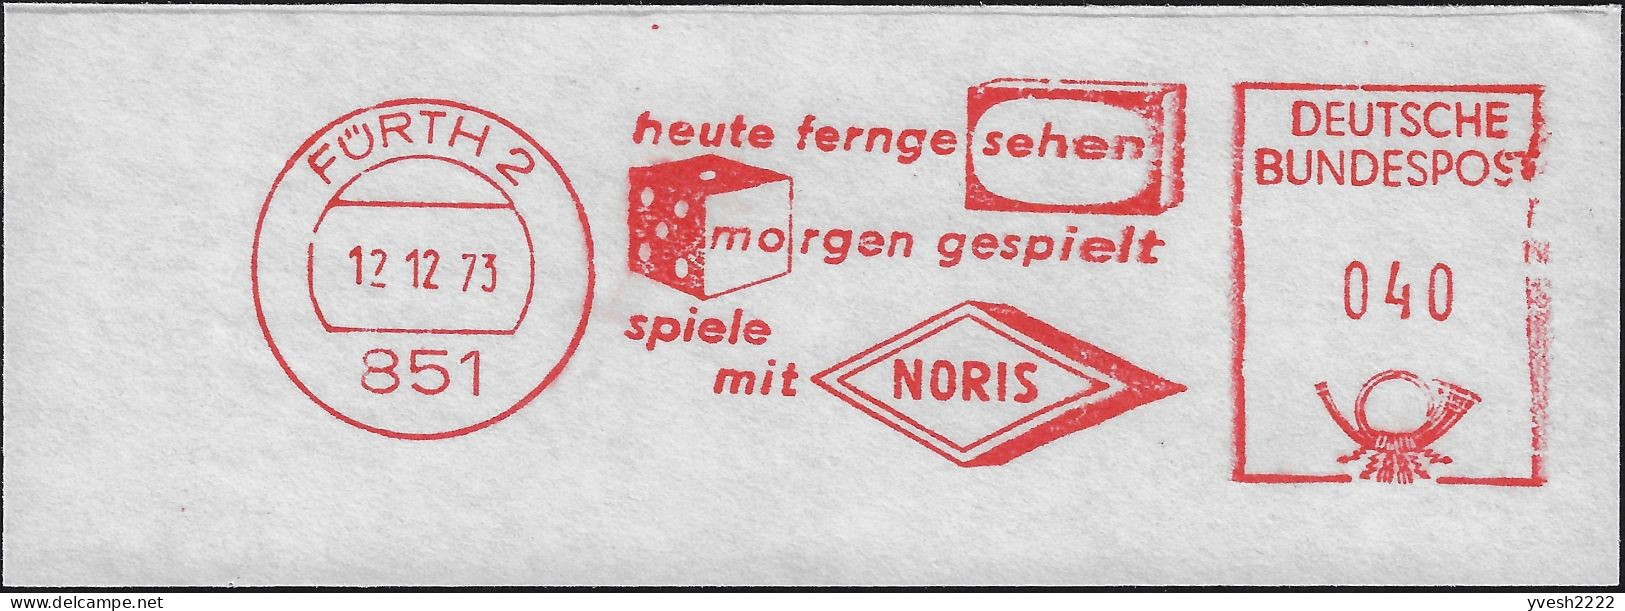 Allemagne Fédérale 1973. Empreinte De Machine à Affranchir. Télévision, Dé - Non Classificati